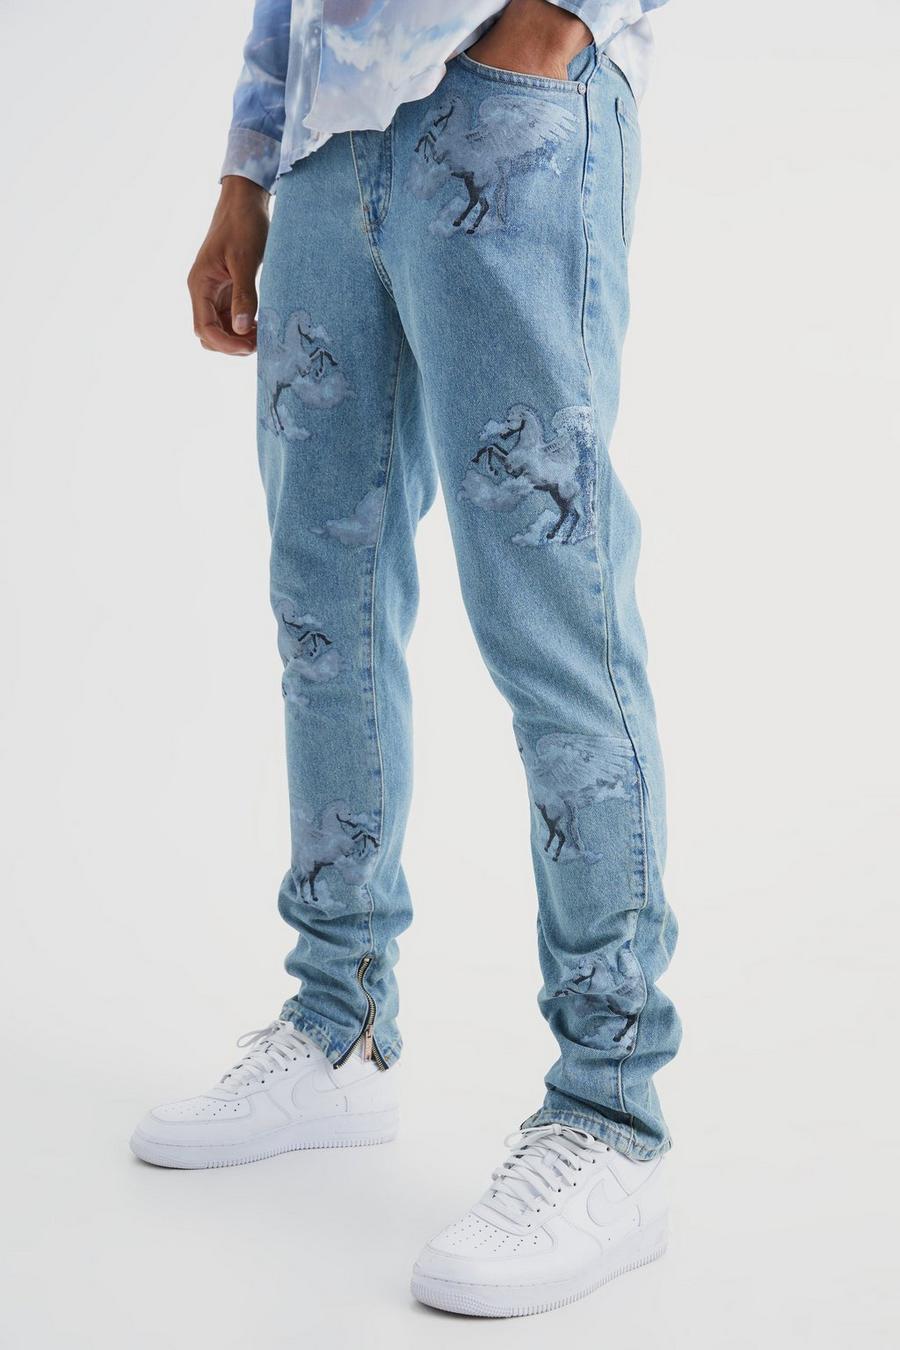 Jeans Tall Slim Fit in denim rigido con grafica all over e inserti, Antique wash